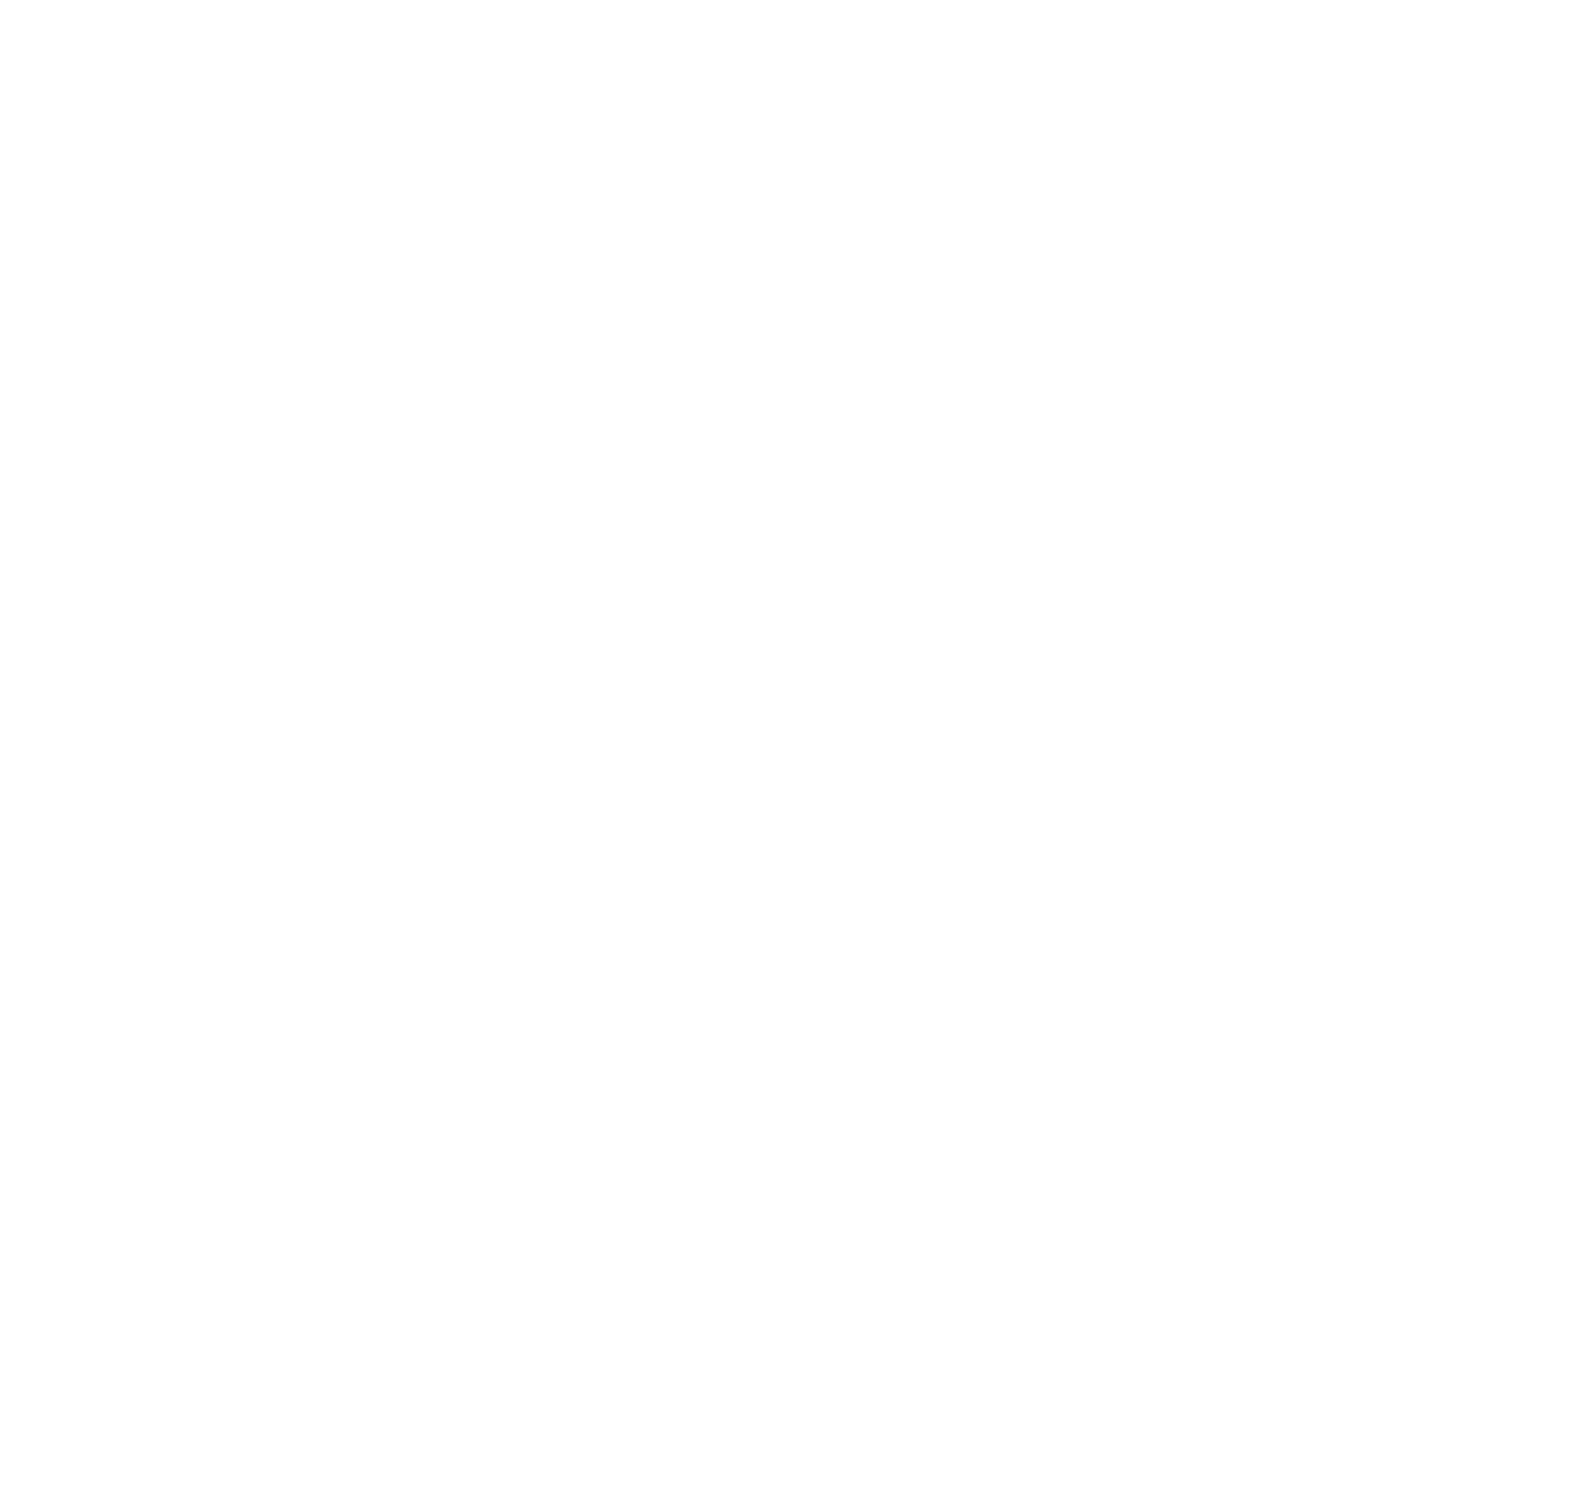 Santander logo pour fonds sombres (PNG transparent)